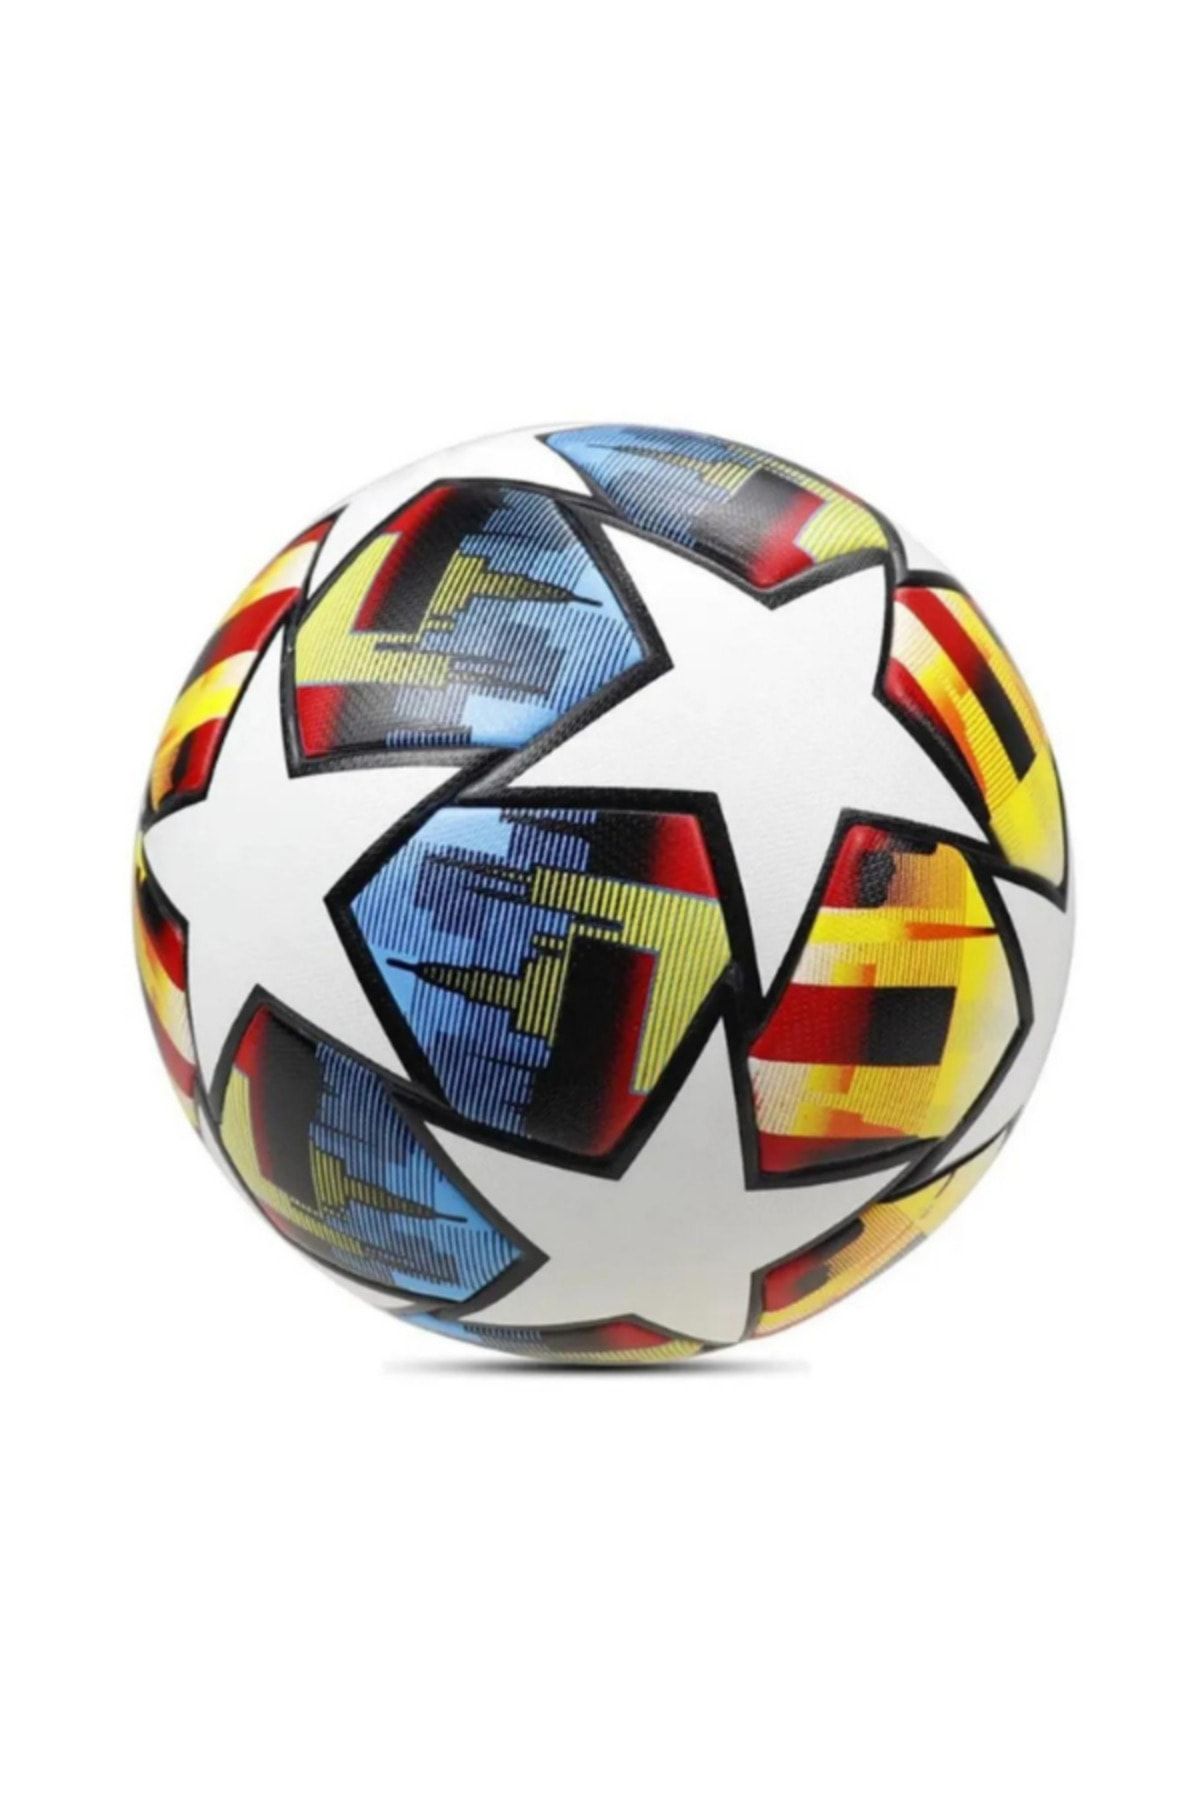 Janissary Renkli Şampiyonlar Ligi Tasarımı Dikişli Futbol Topu, 5 Numara "Şişmiş Olarak Gönderilir."